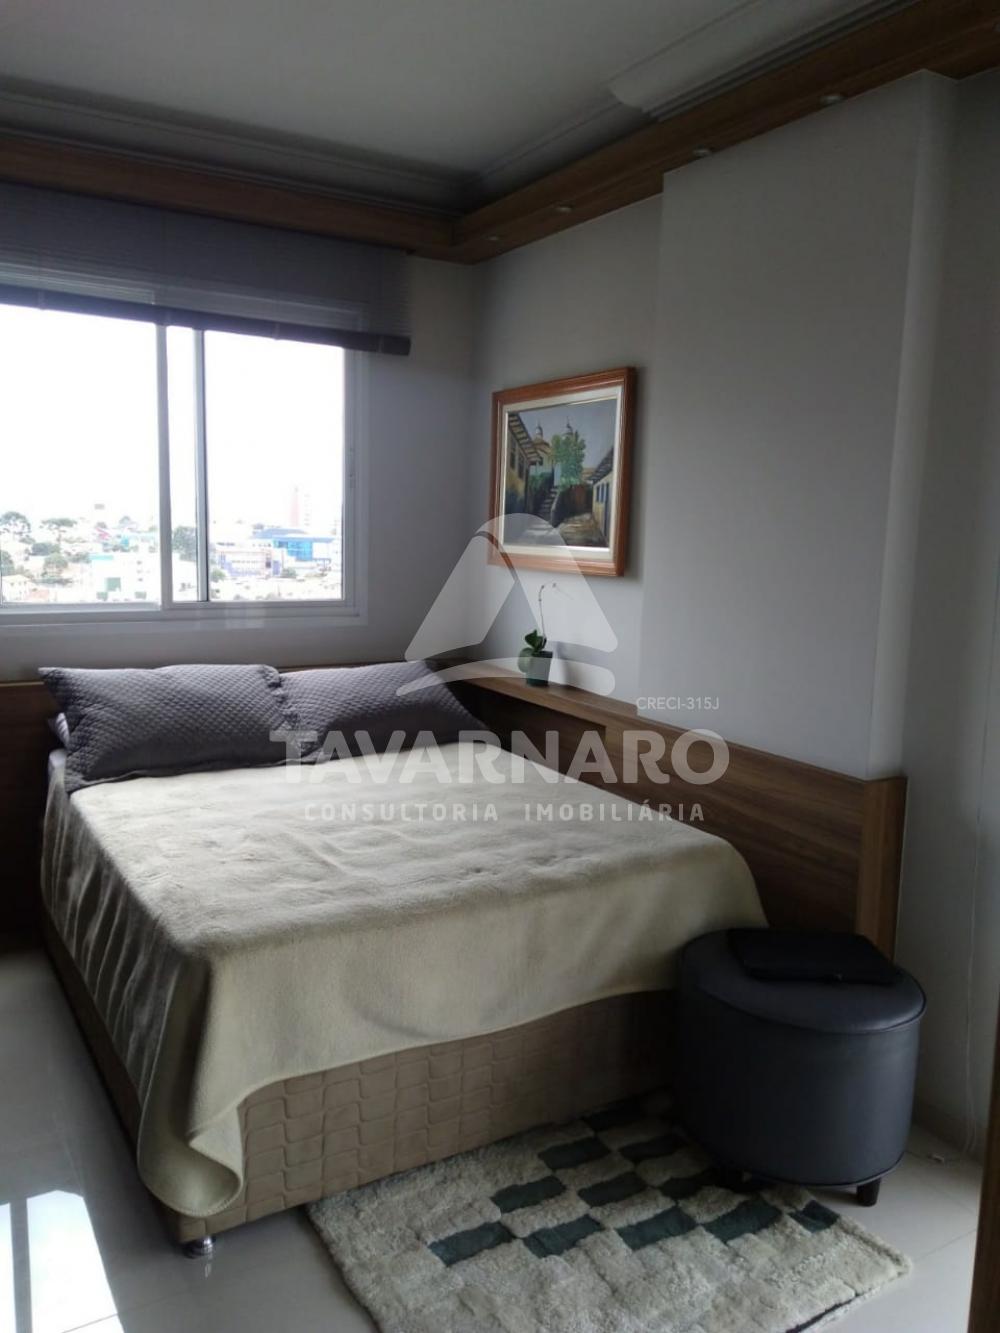 Comprar Apartamento / Padrão em Ponta Grossa R$ 230.000,00 - Foto 2